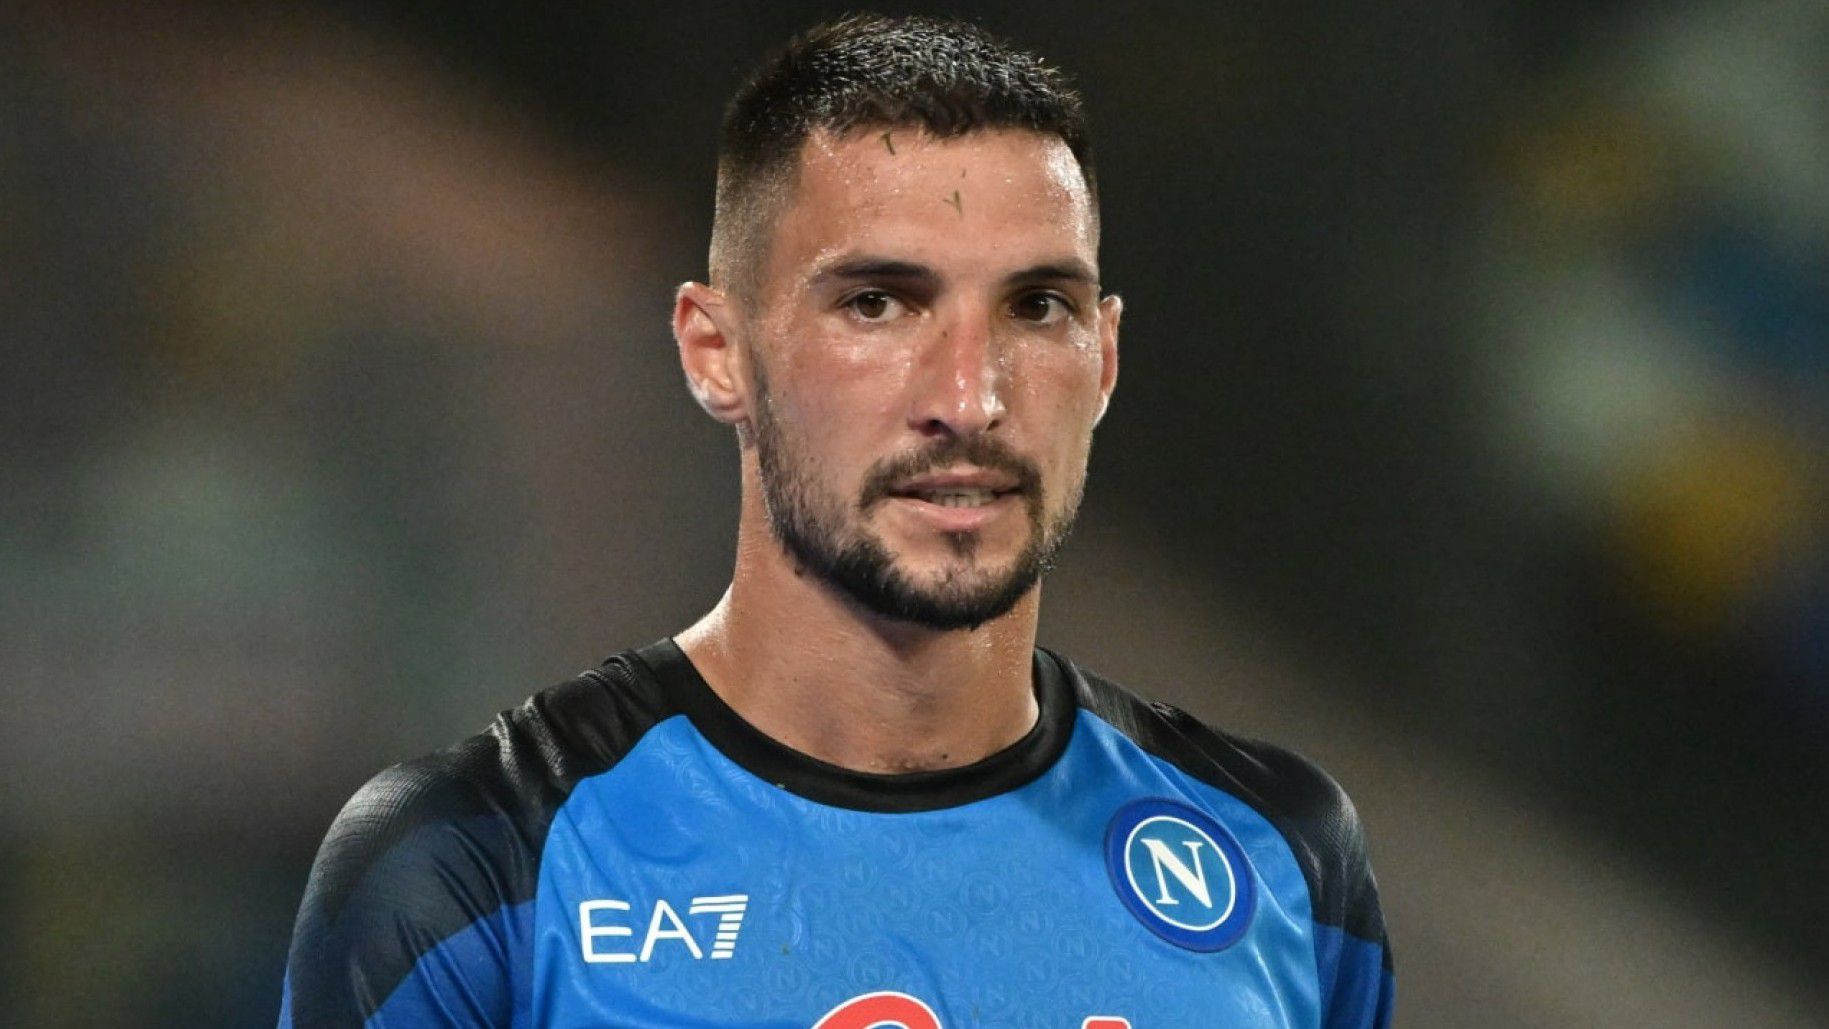 A Napoli és a Roma játékosa sem lép pályára a magyar válogatott ellen